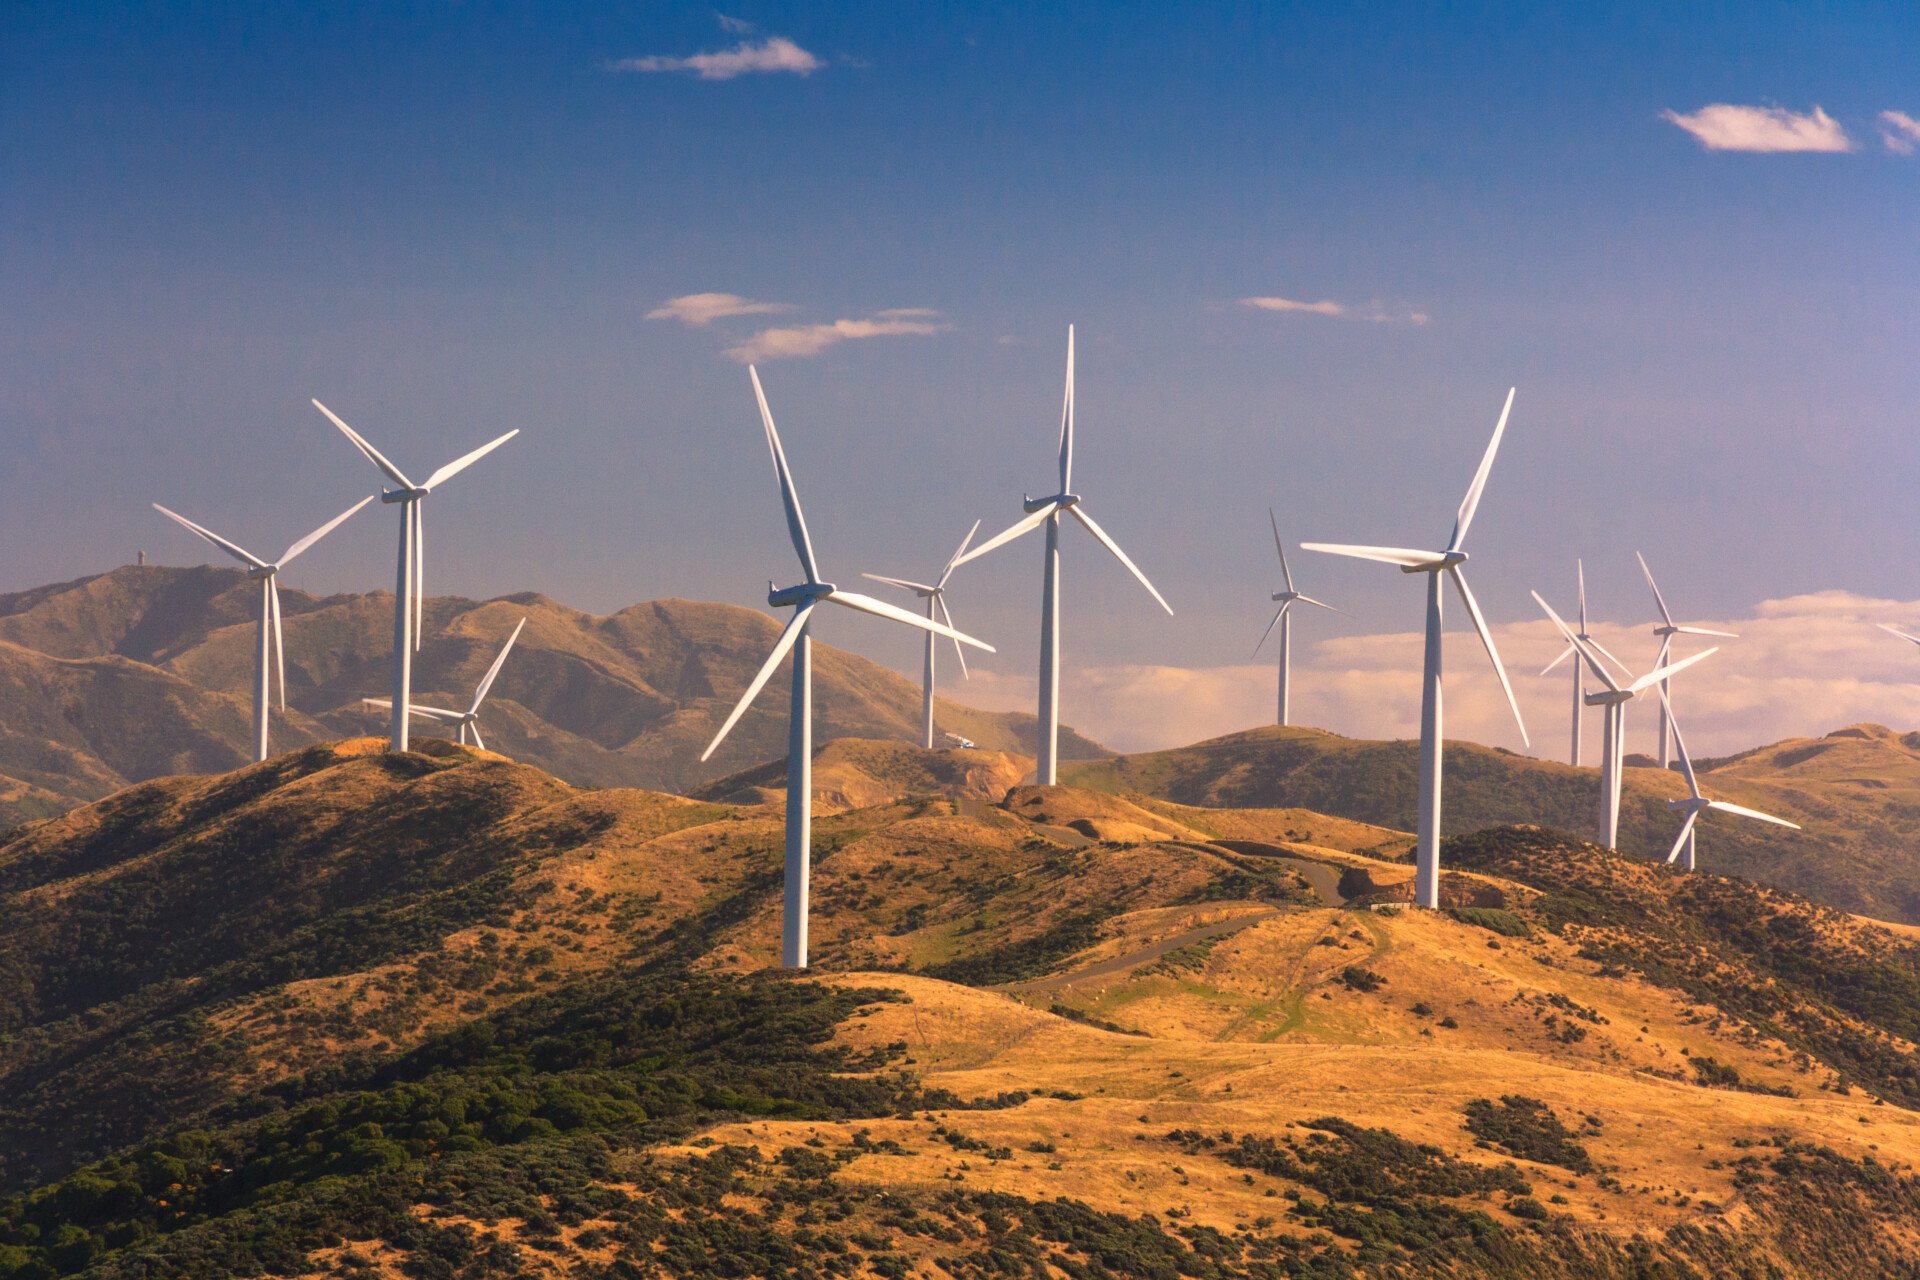 Ορόσημο για τις ανανεώσιμες πηγές: Πάνω από το 30% για πρώτη φορά η συμμετοχή τους στο παγκόσμιο ενεργειακό μείγμα